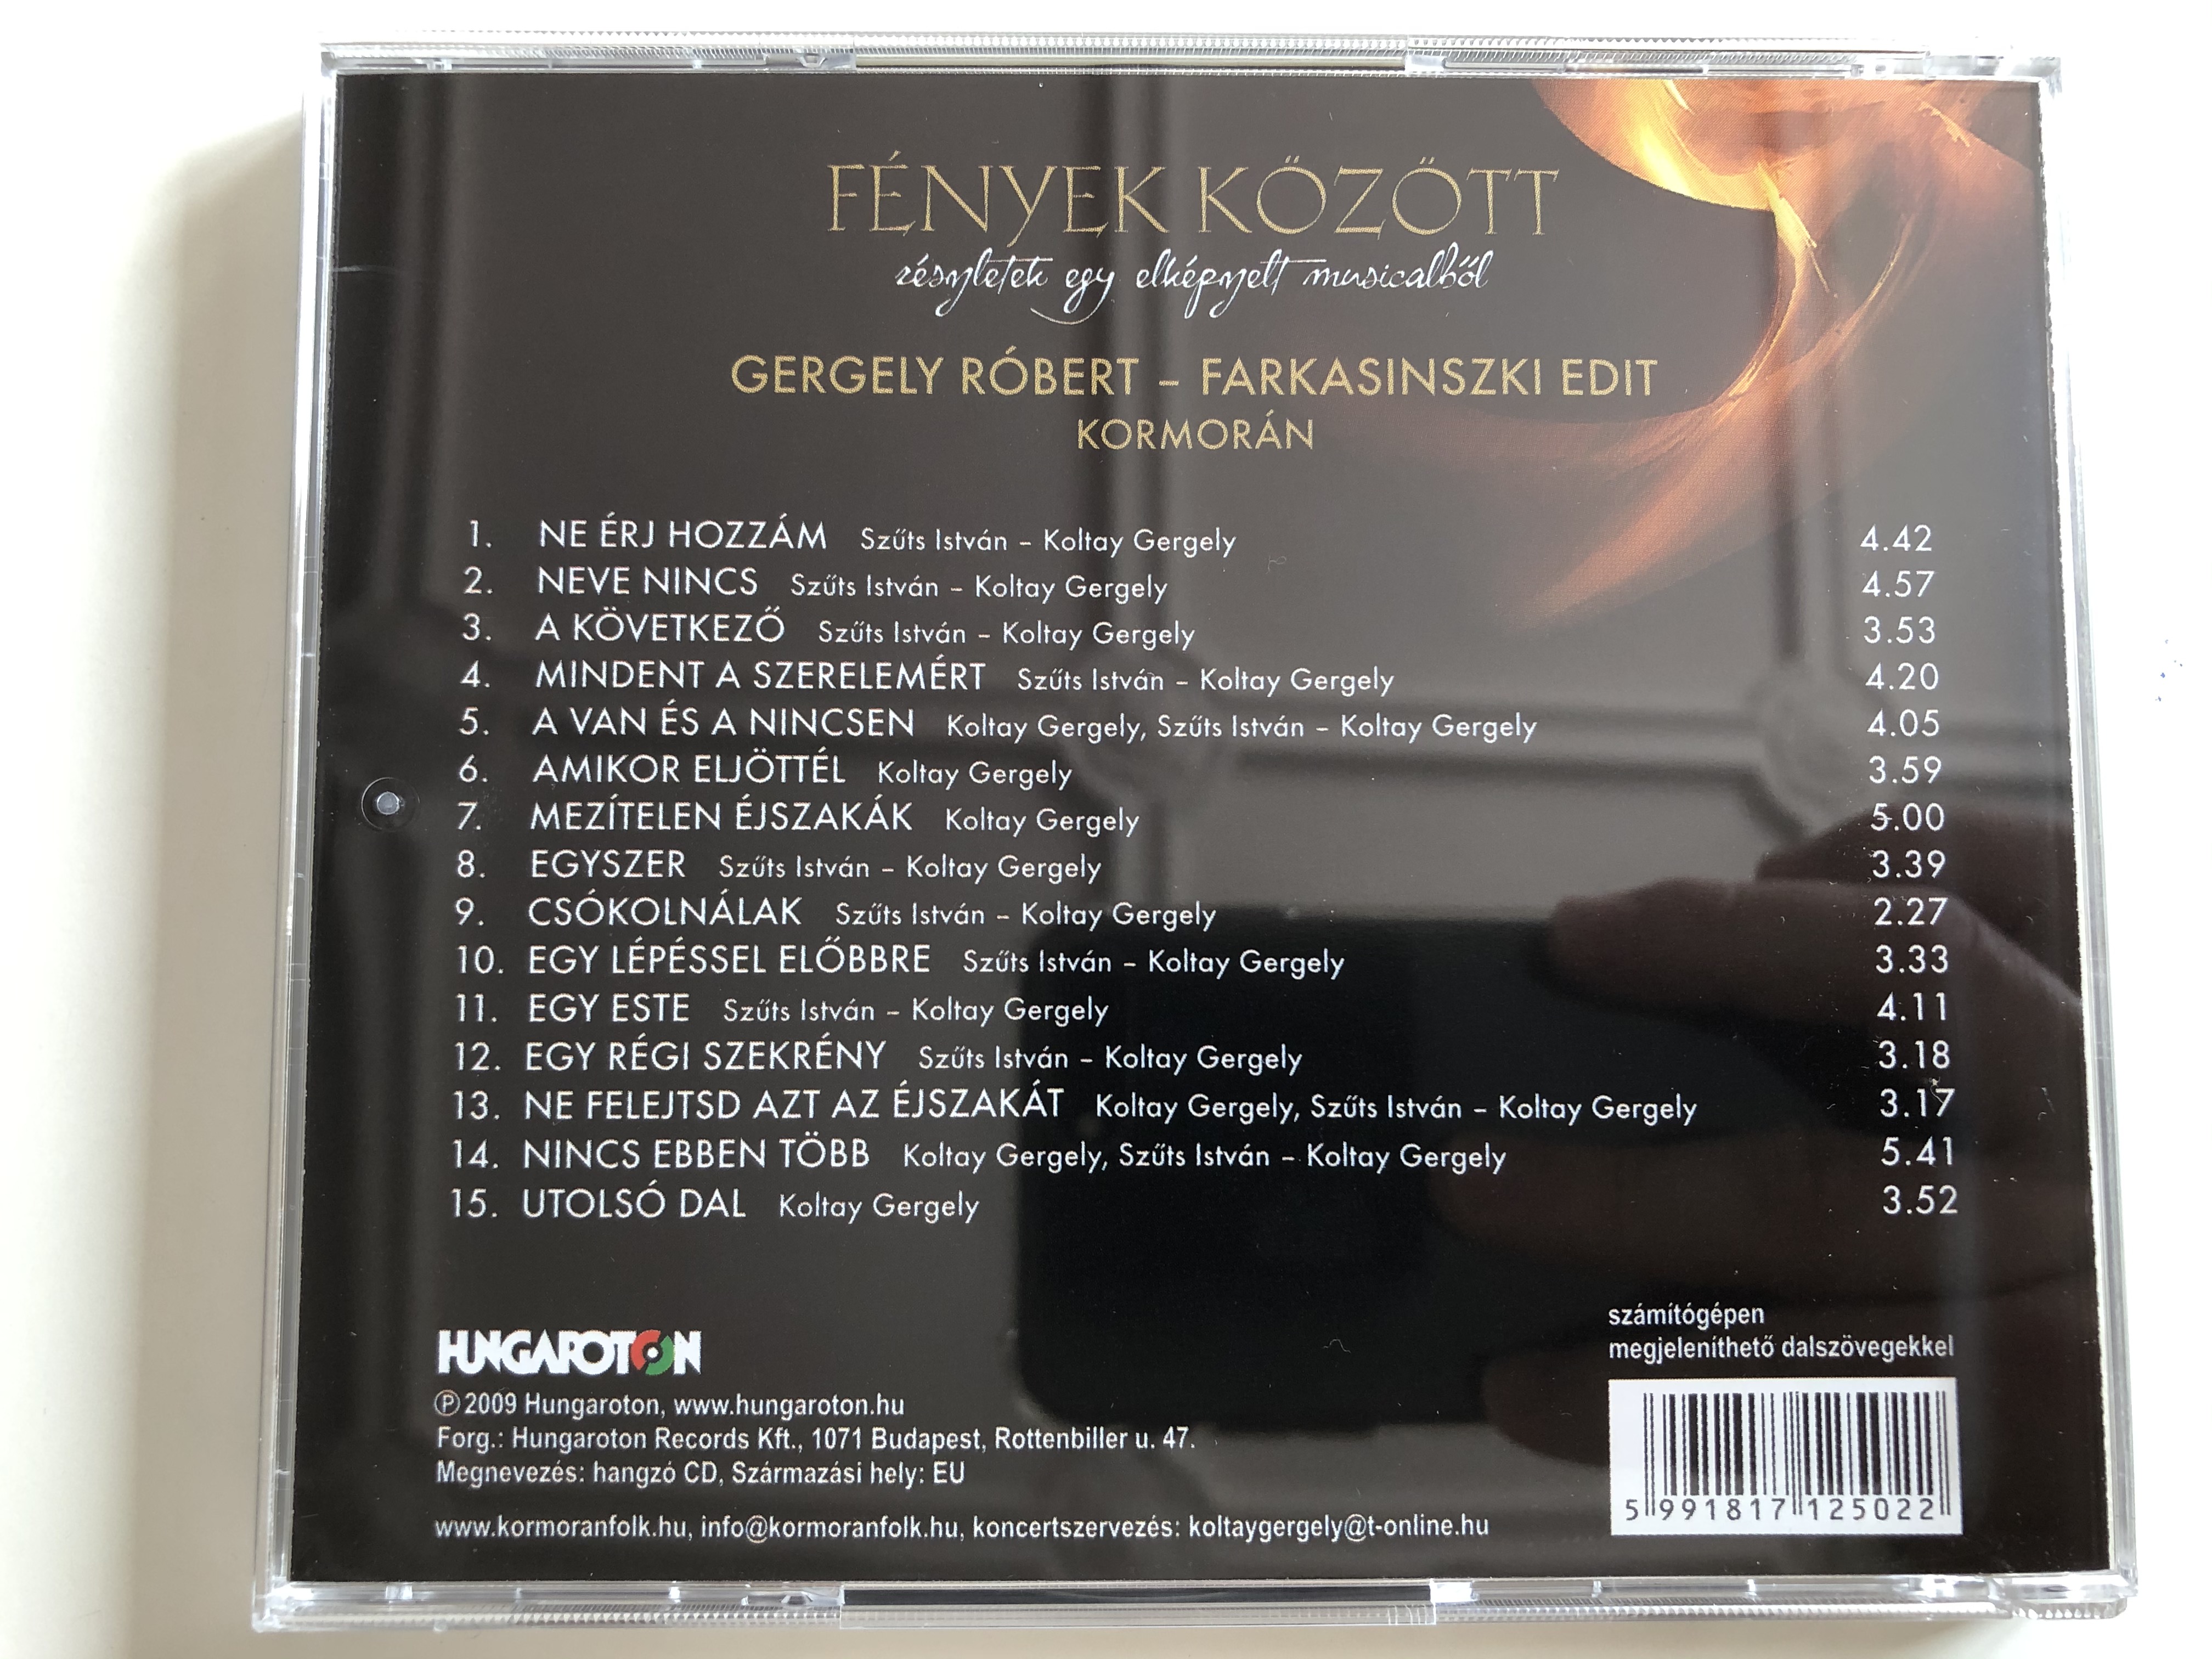 gergely-r-bert-farkasinszky-edit-kormor-n-f-nyek-k-z-tt-hungaroton-audio-cd-2009-hcd-71250-7-.jpg